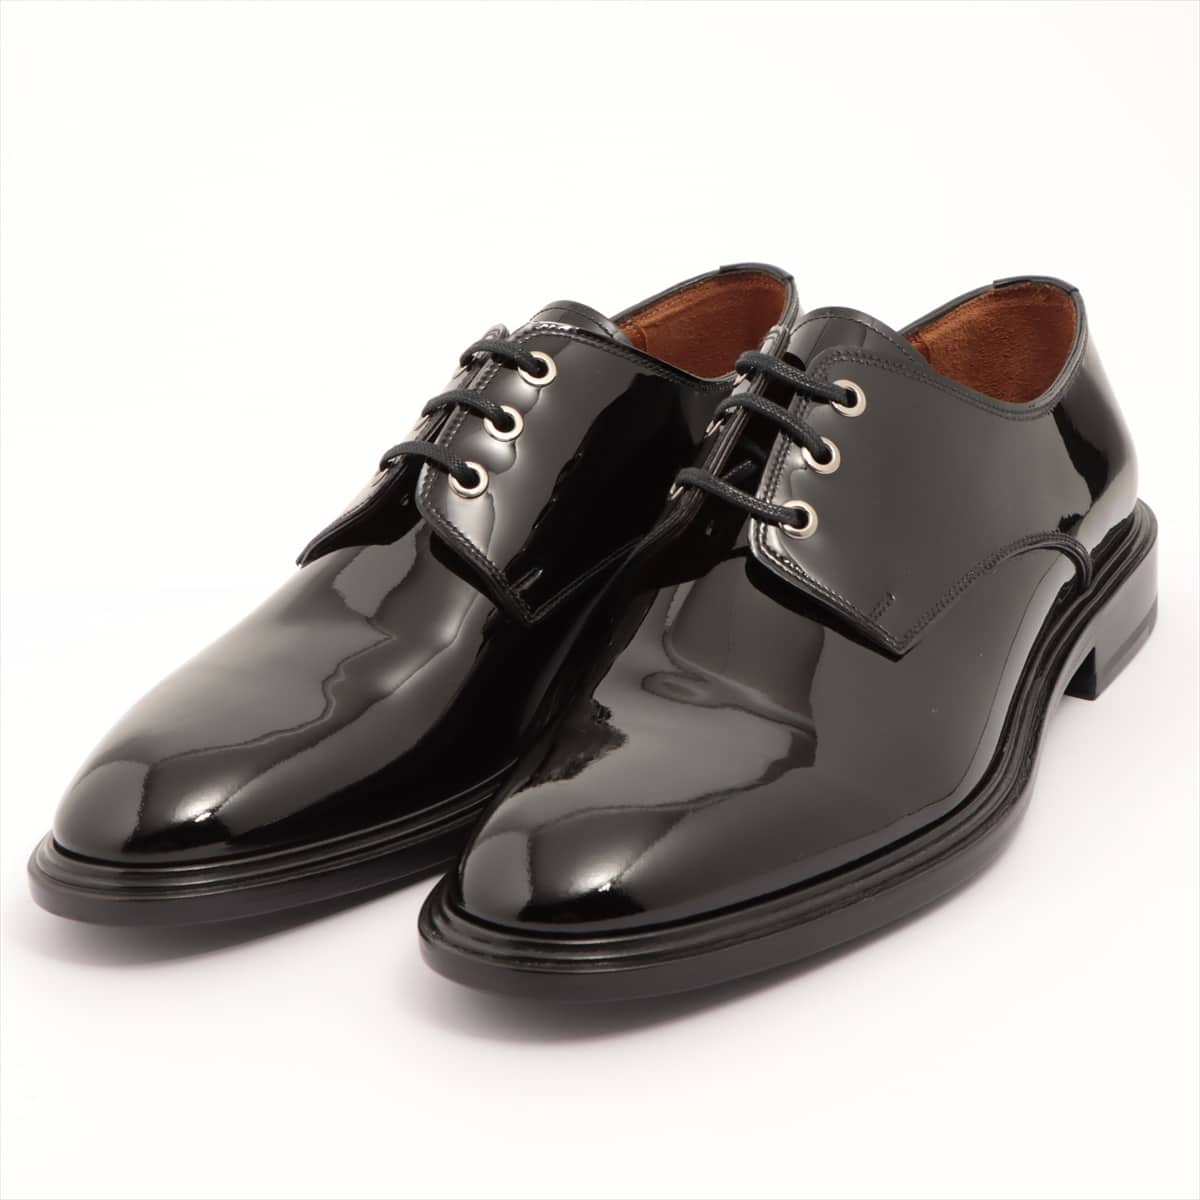 Givenchy Patent leather Dress shoes 42 Men's Black BM8050